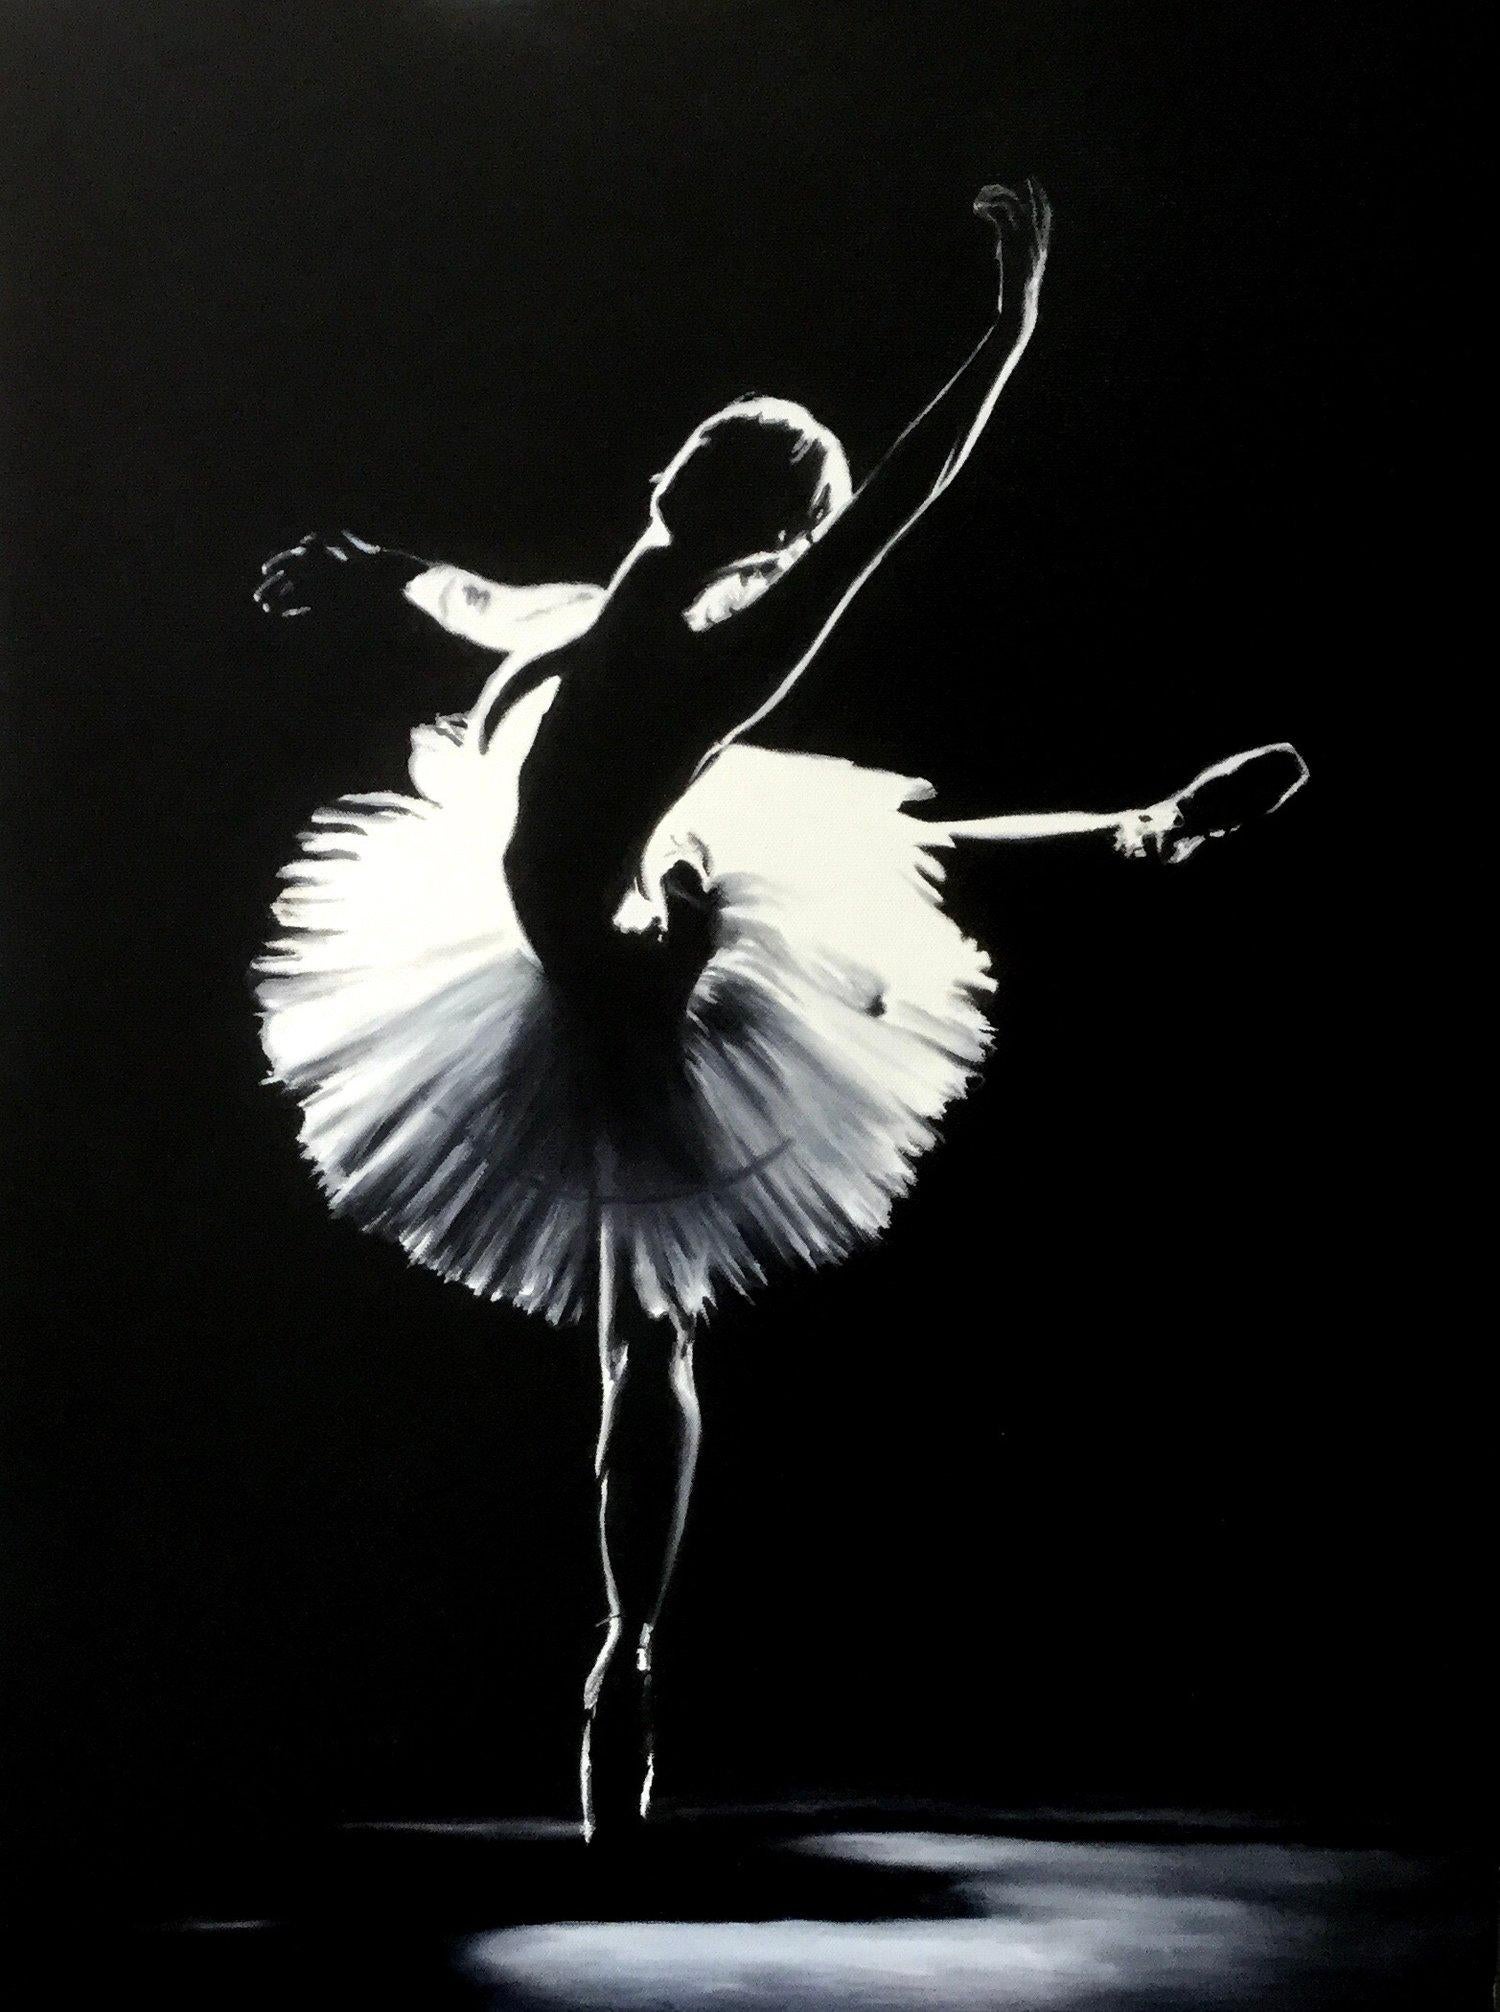 Cette œuvre en noir et blanc, "Dancing in the Light", est une peinture à l'huile sur toile de 24x18 réalisée par l'artiste Marie Channer. On y voit une danseuse de ballet dont la silhouette est sous les projecteurs de la scène, prise dans la pose.